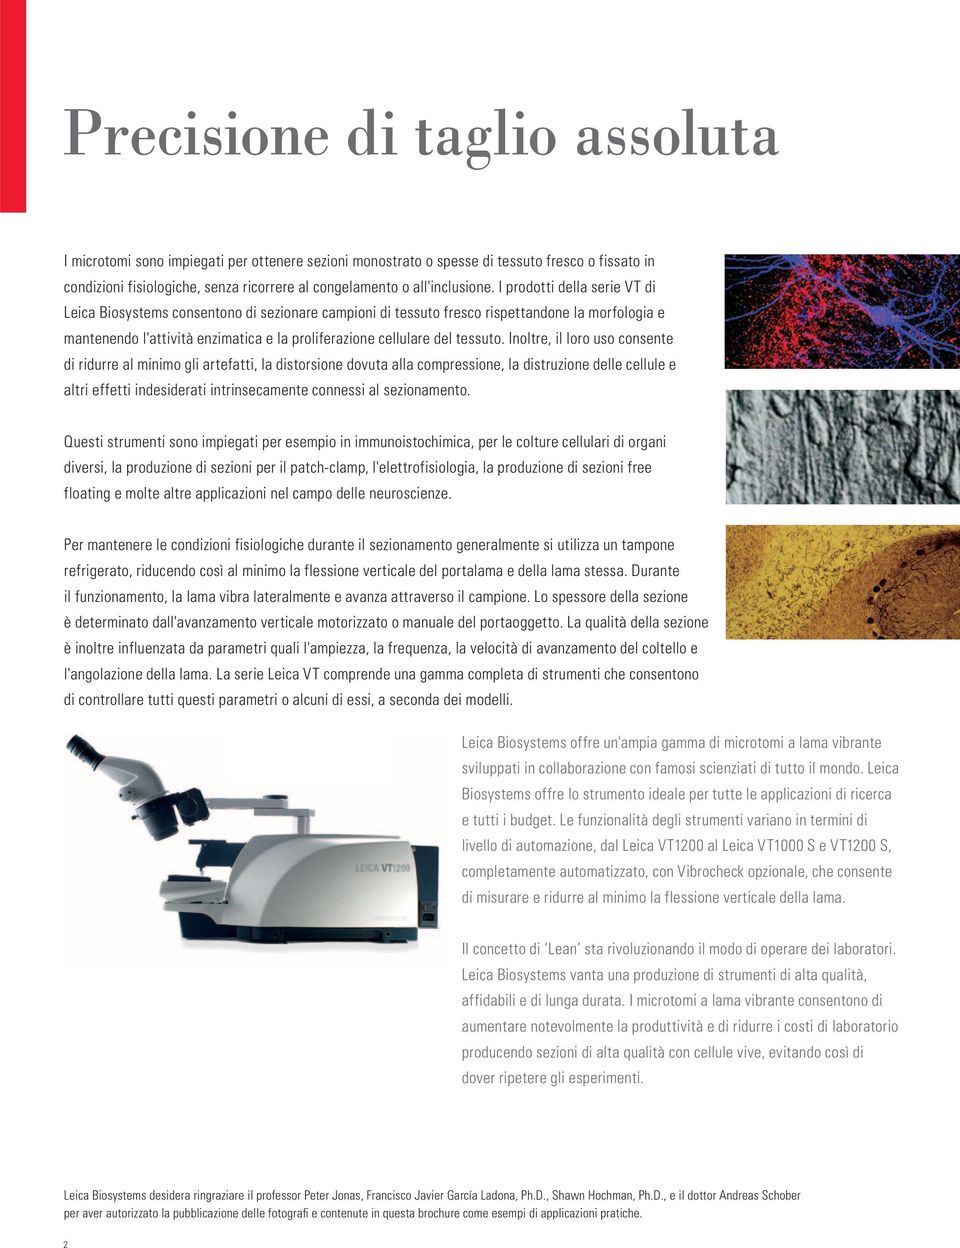 I prodotti della serie VT di Leica Biosystems consentono di sezionare campioni di tessuto fresco rispettandone la morfologia e mantenendo l'attività enzimatica e la proliferazione cellulare del